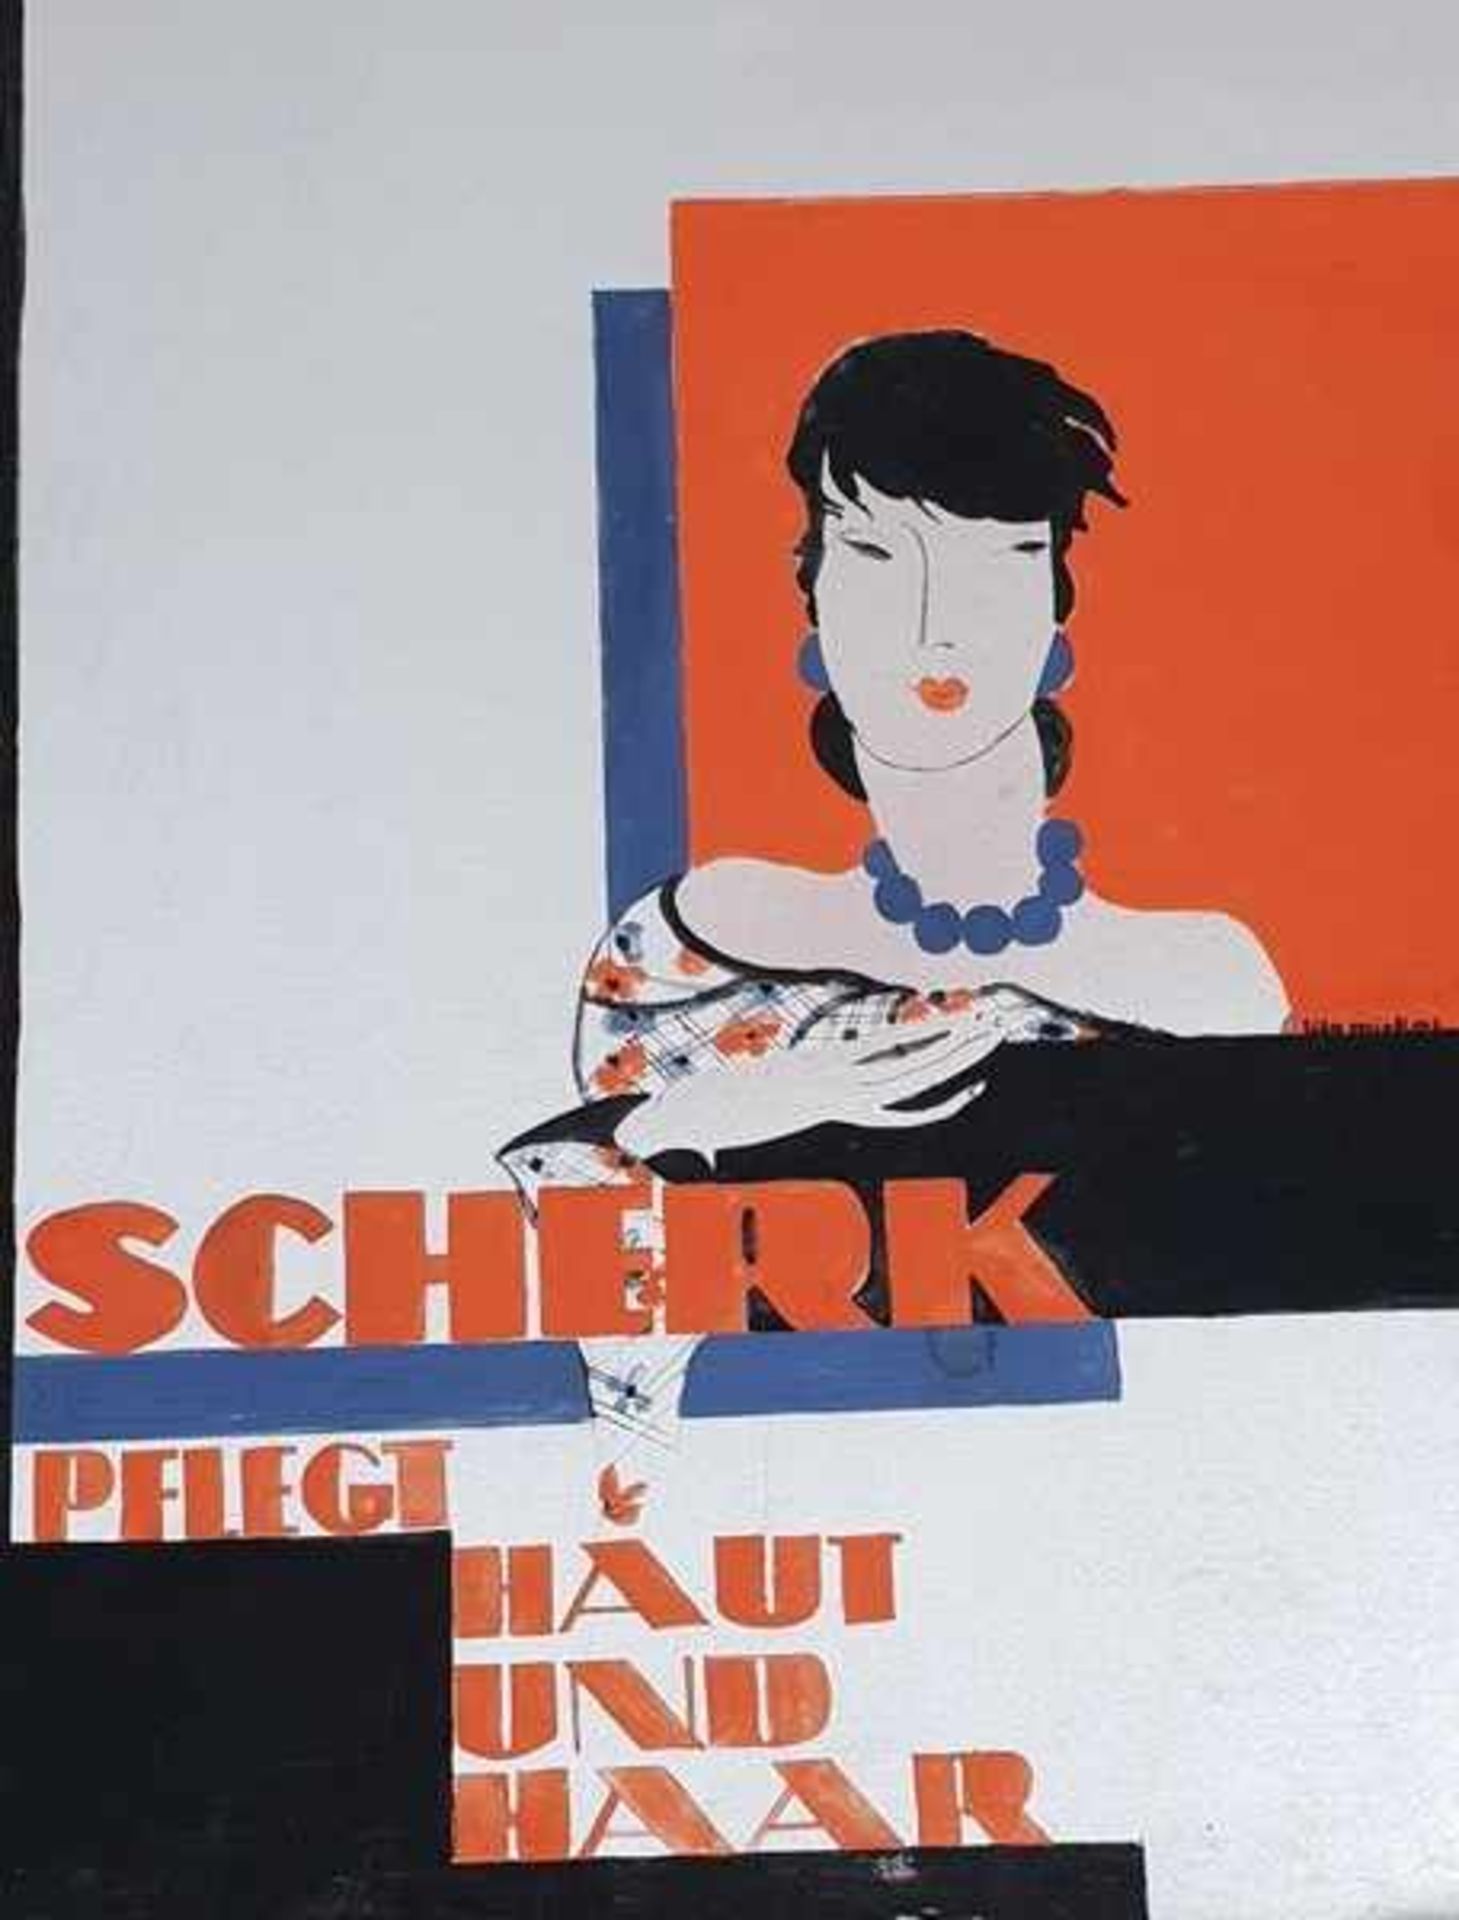 Plakatentwurf, "Scherk pflegt Haut und Haar" ,Wasserfarben auf Kartonpapier, signiert: Lilo